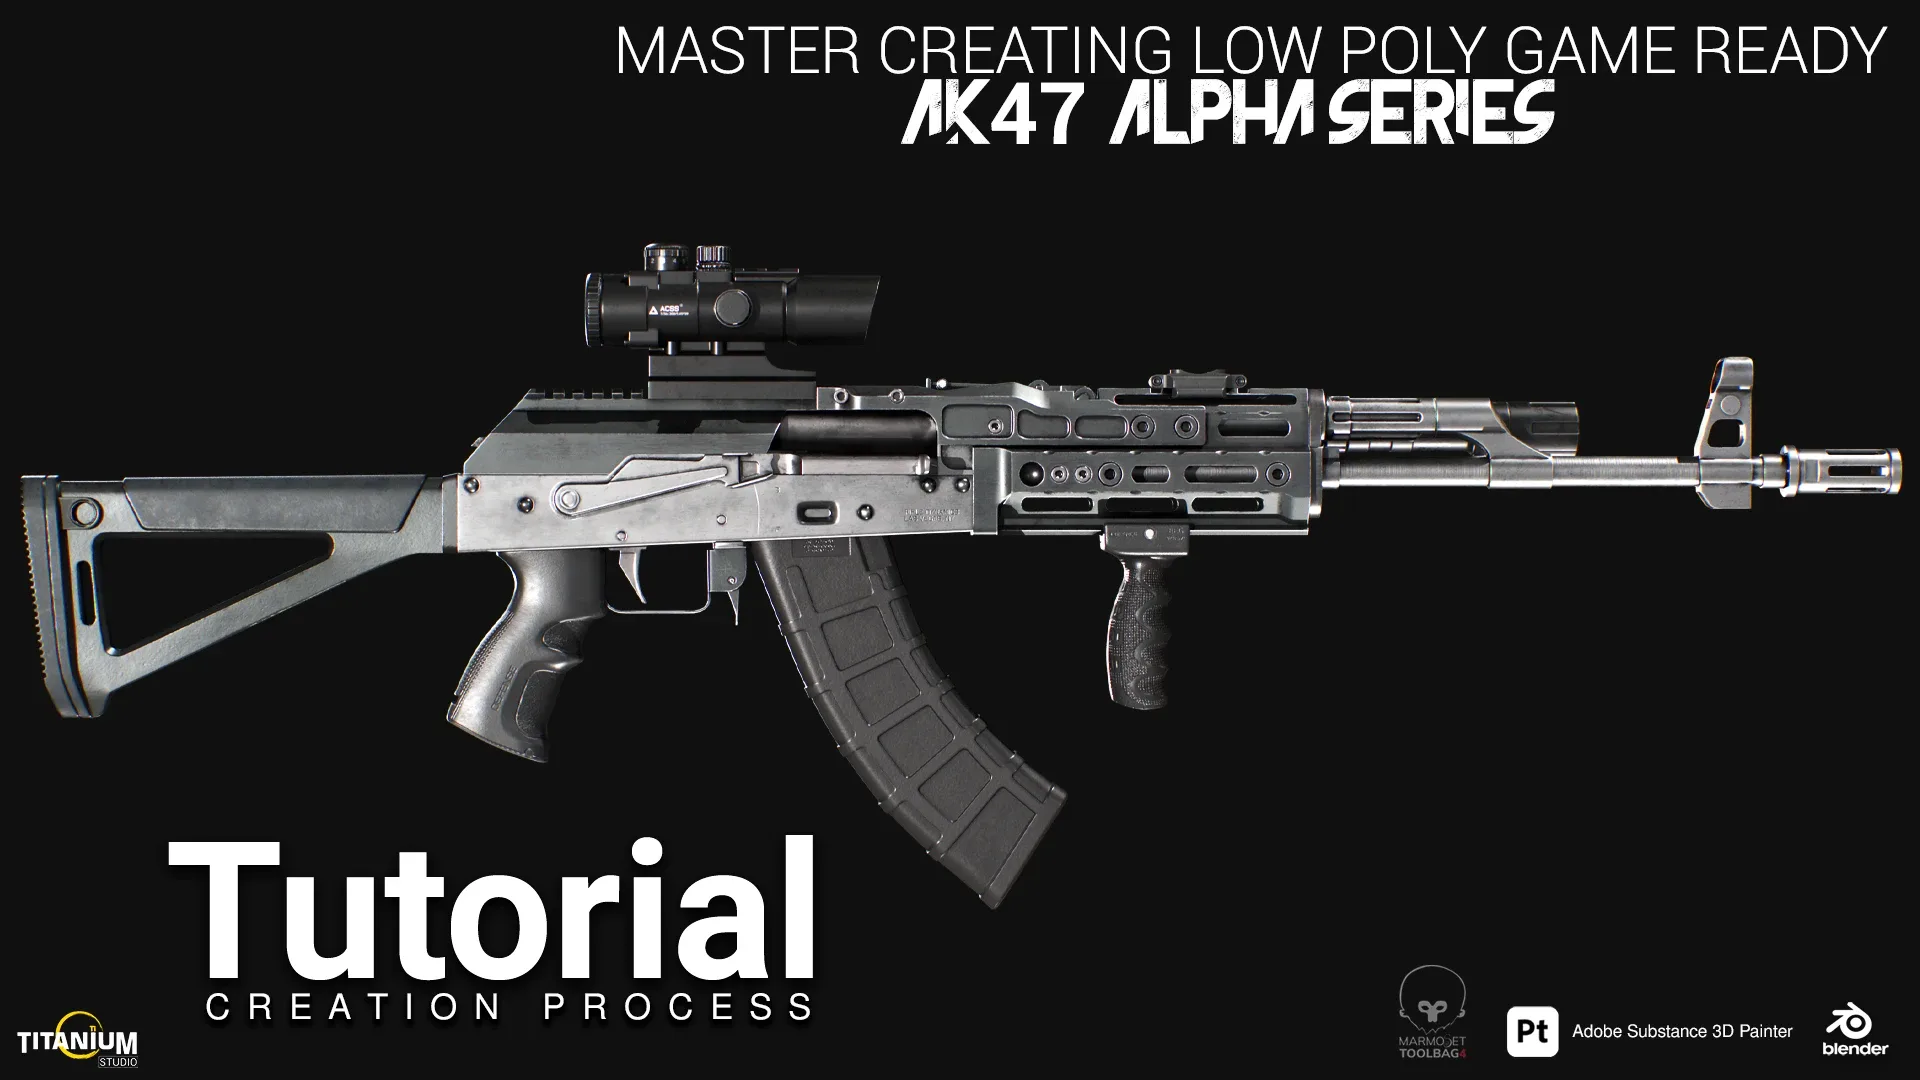 Modeling AK 47 Alpha in Blender and Substance 3D Painter